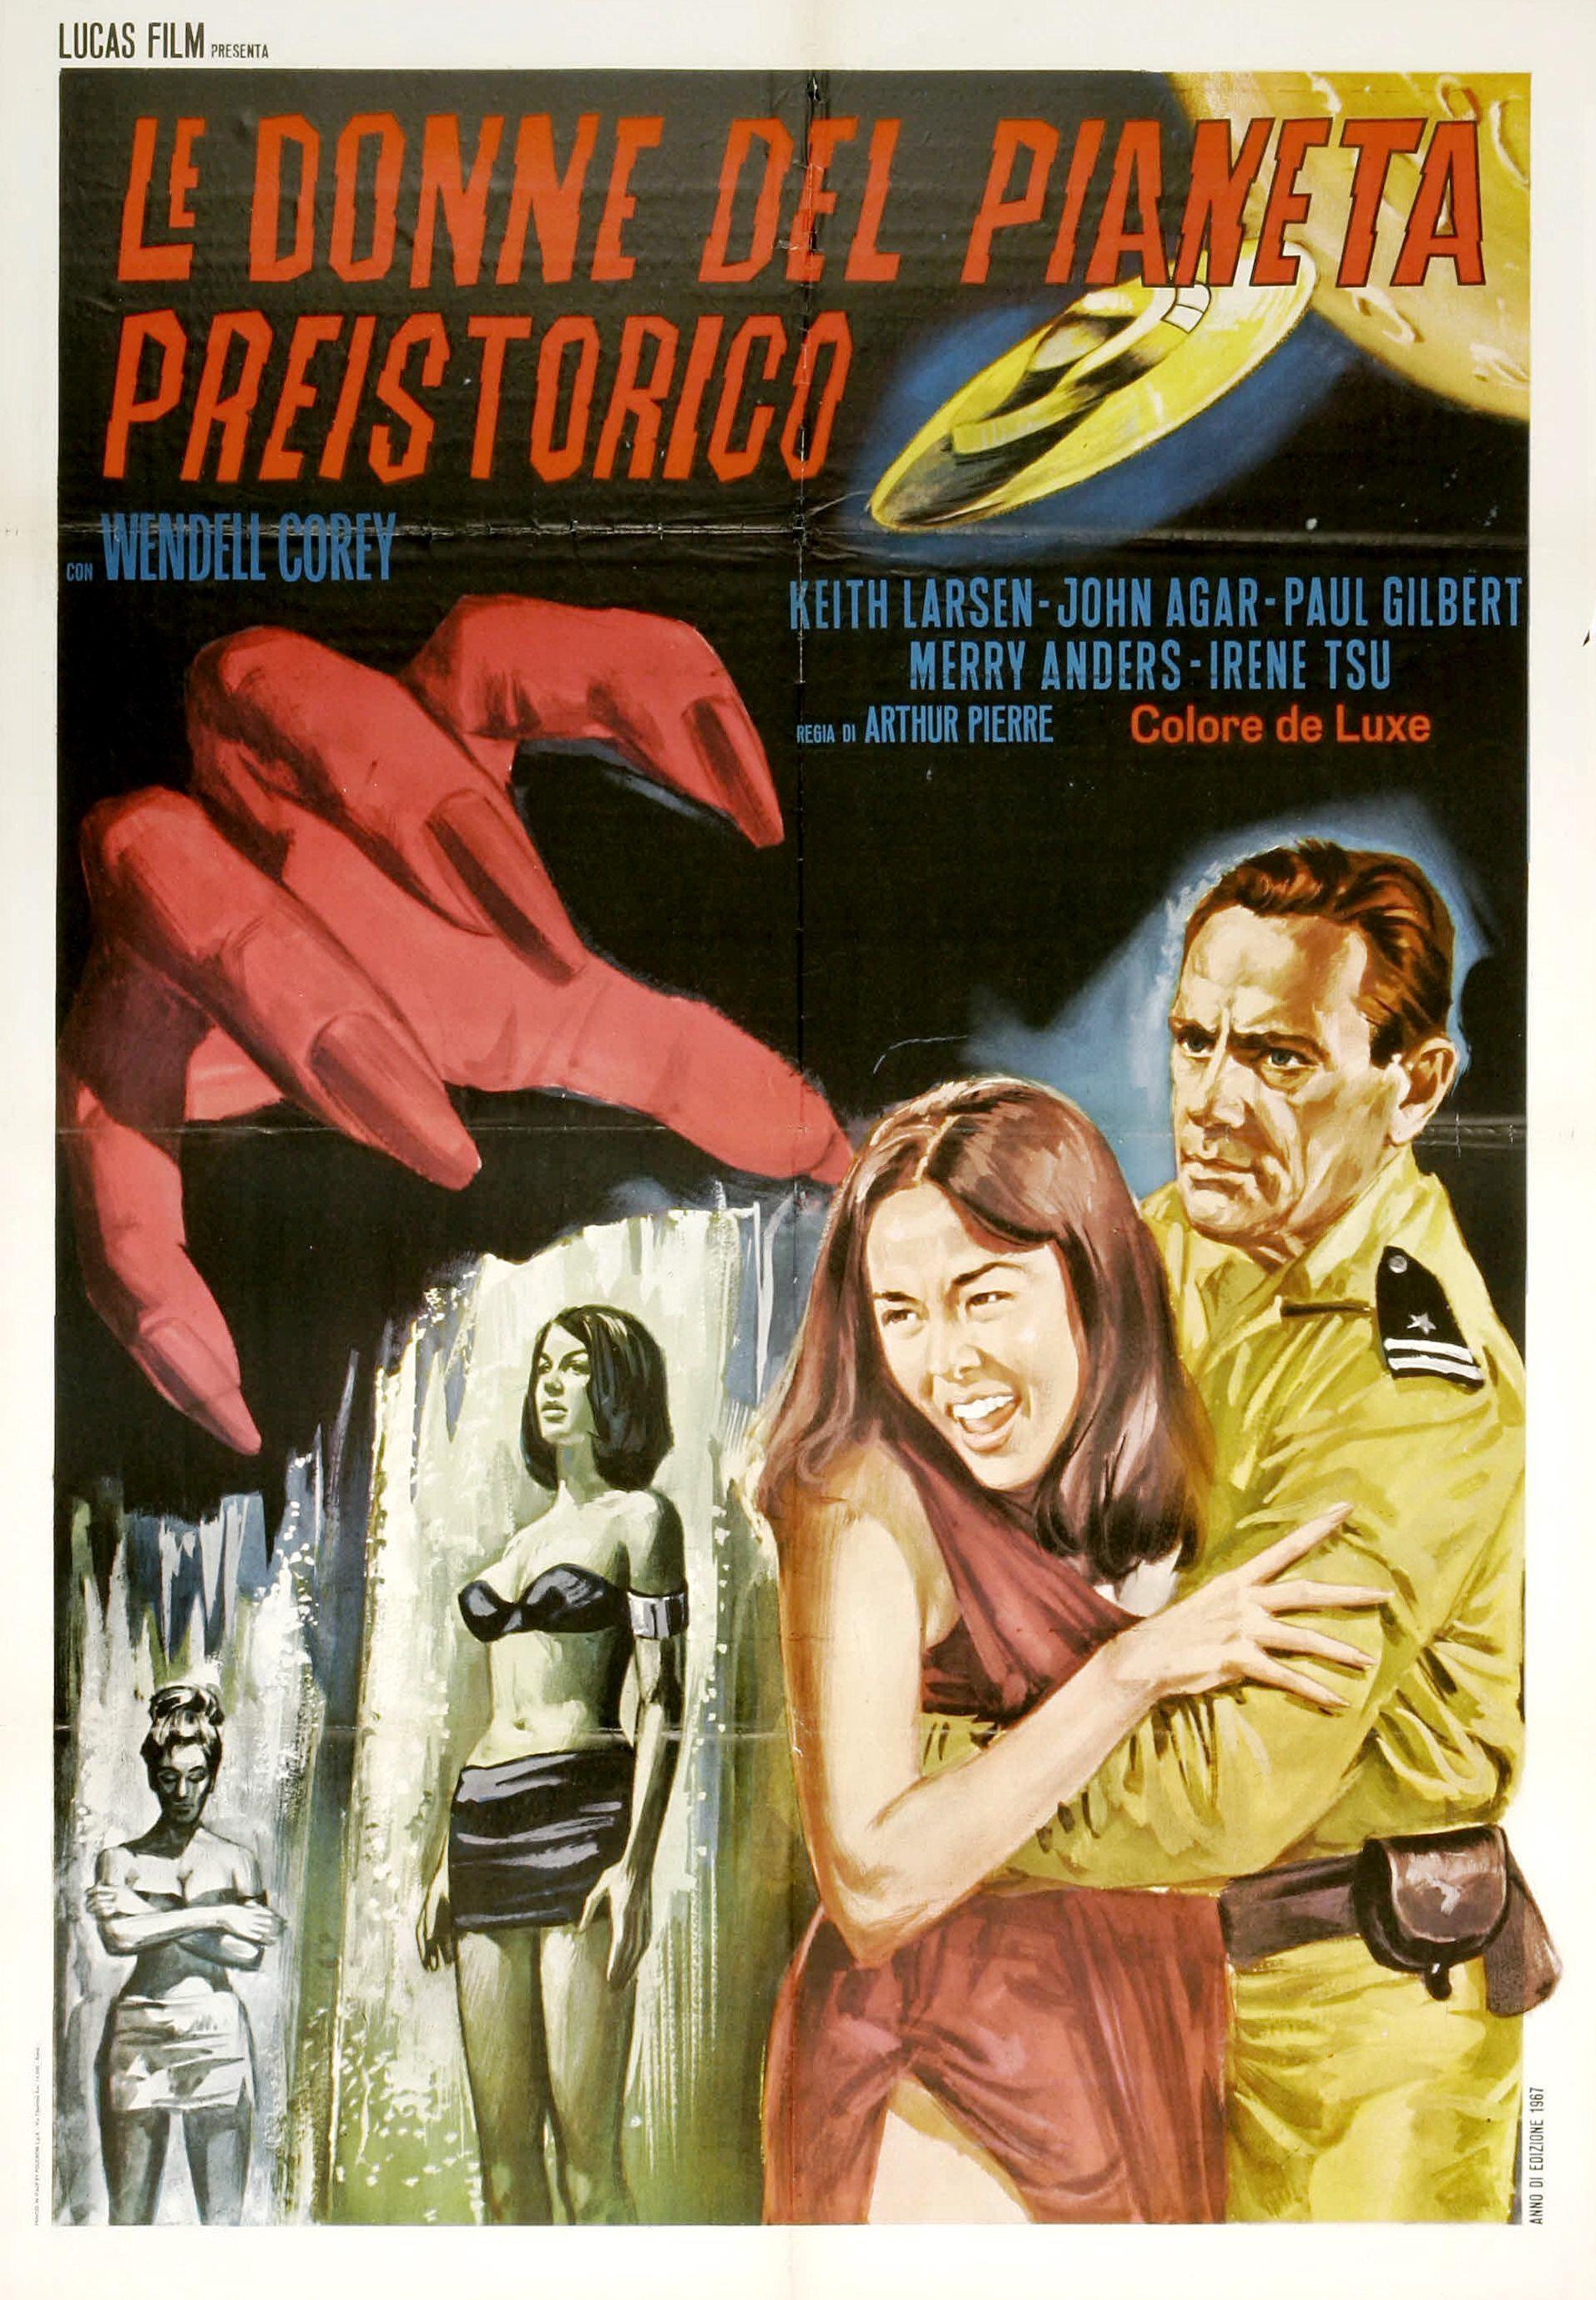 Постер фильма Women of the Prehistoric Planet